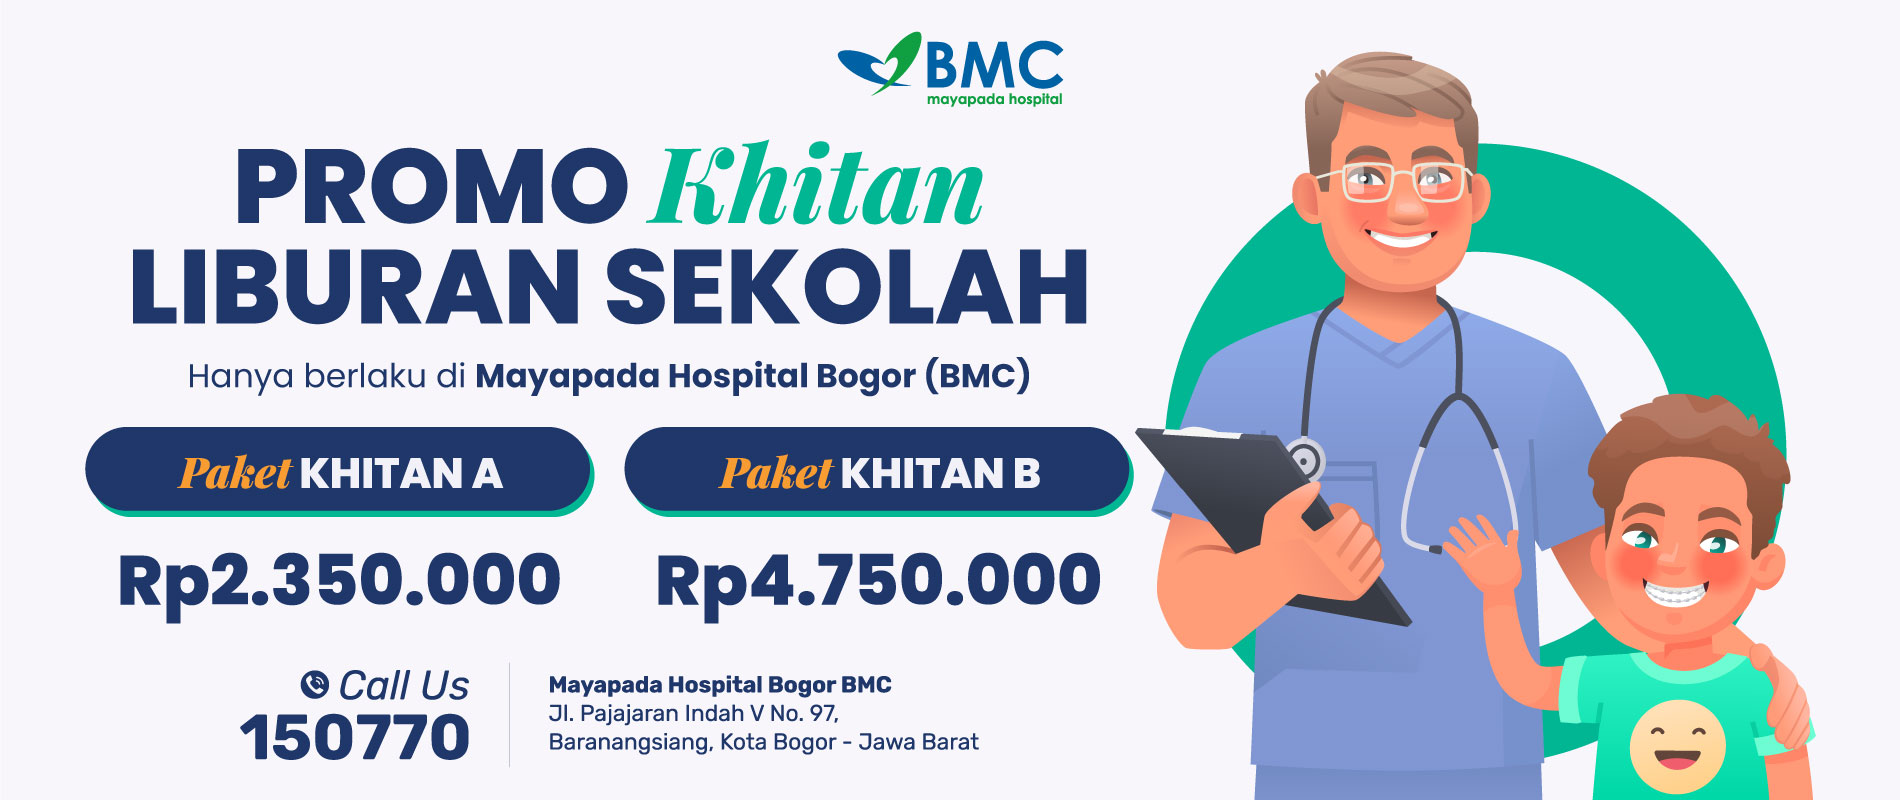 Promo Khitan atau Sunat di Mayapada Hospital Bogor IMG